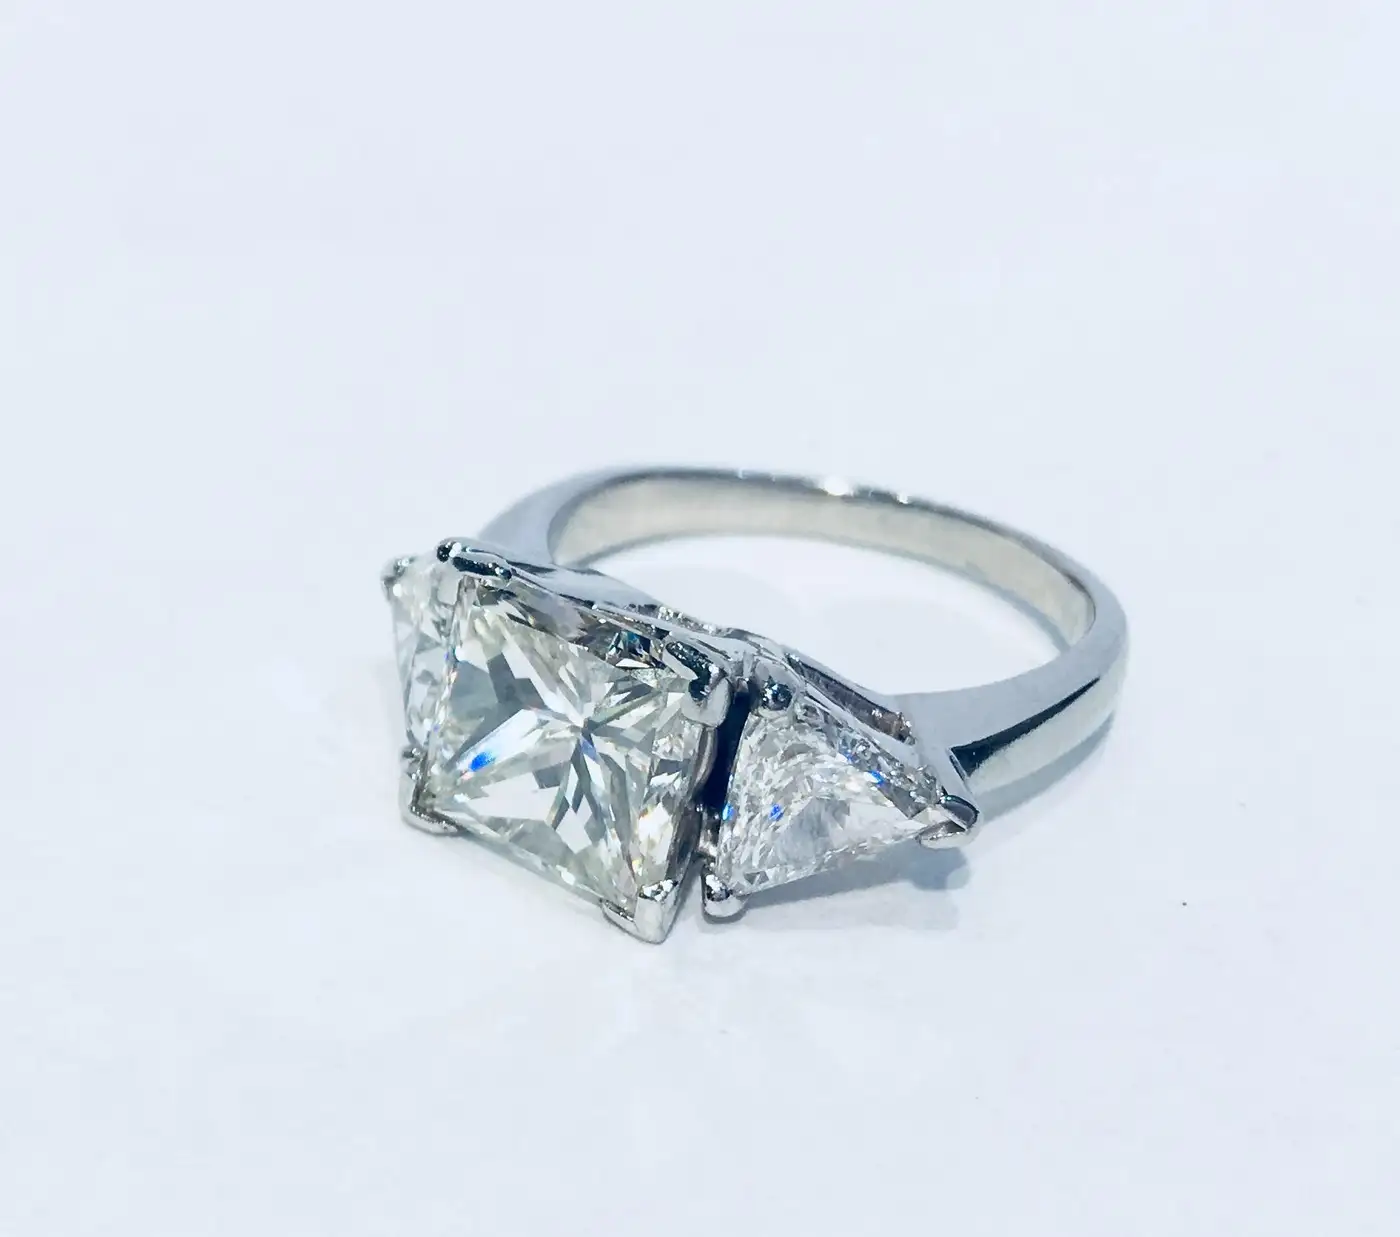 Princess Diamond Ring With 2 Carat Diamond Sides GIA Certified VS2 4.13 Carat